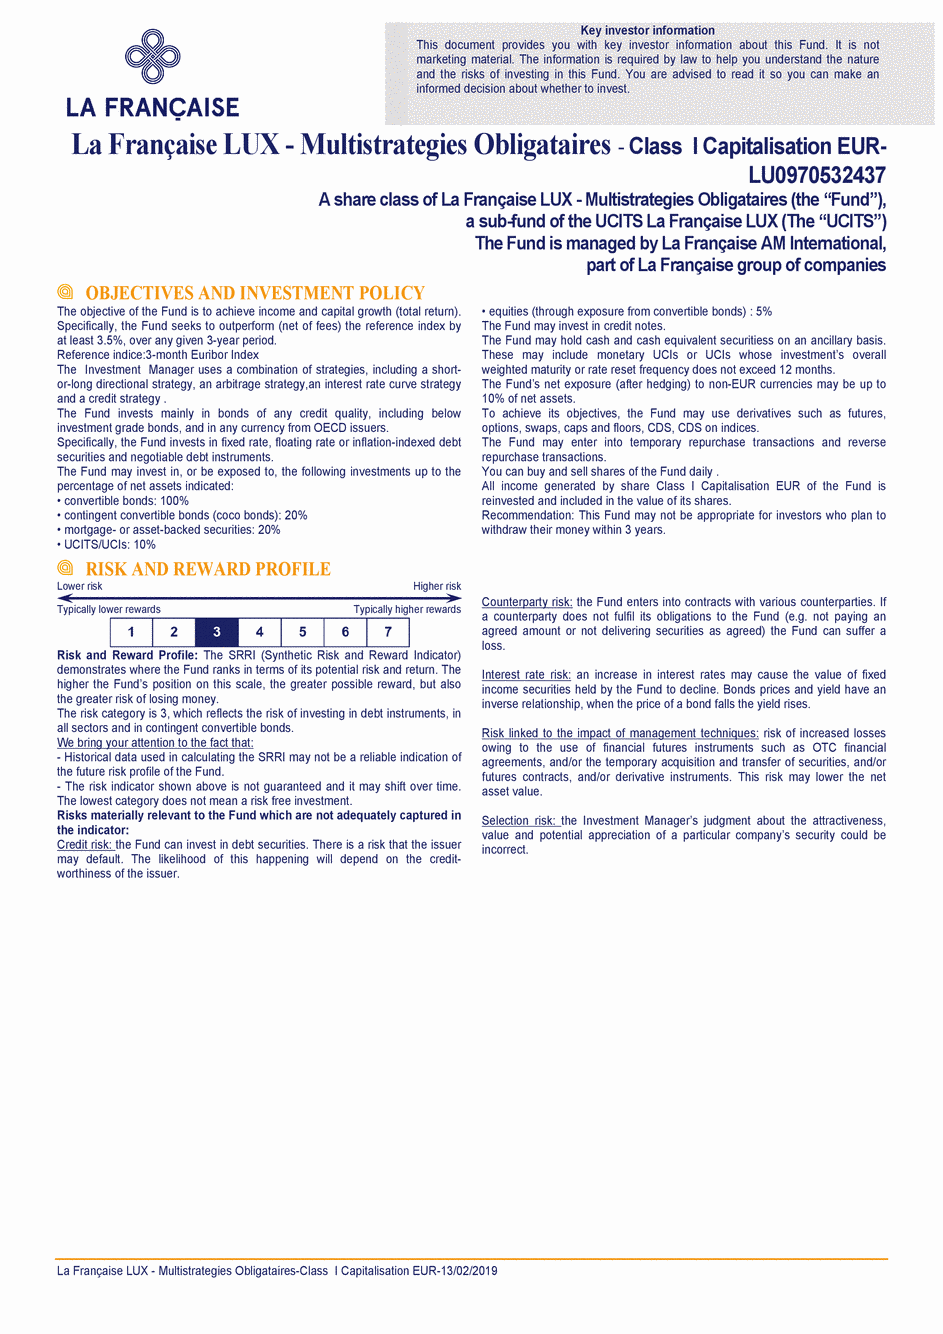 DICI La Française LUX - Multistratégies Obligataires - I (C) EUR - 13/02/2019 - Anglais